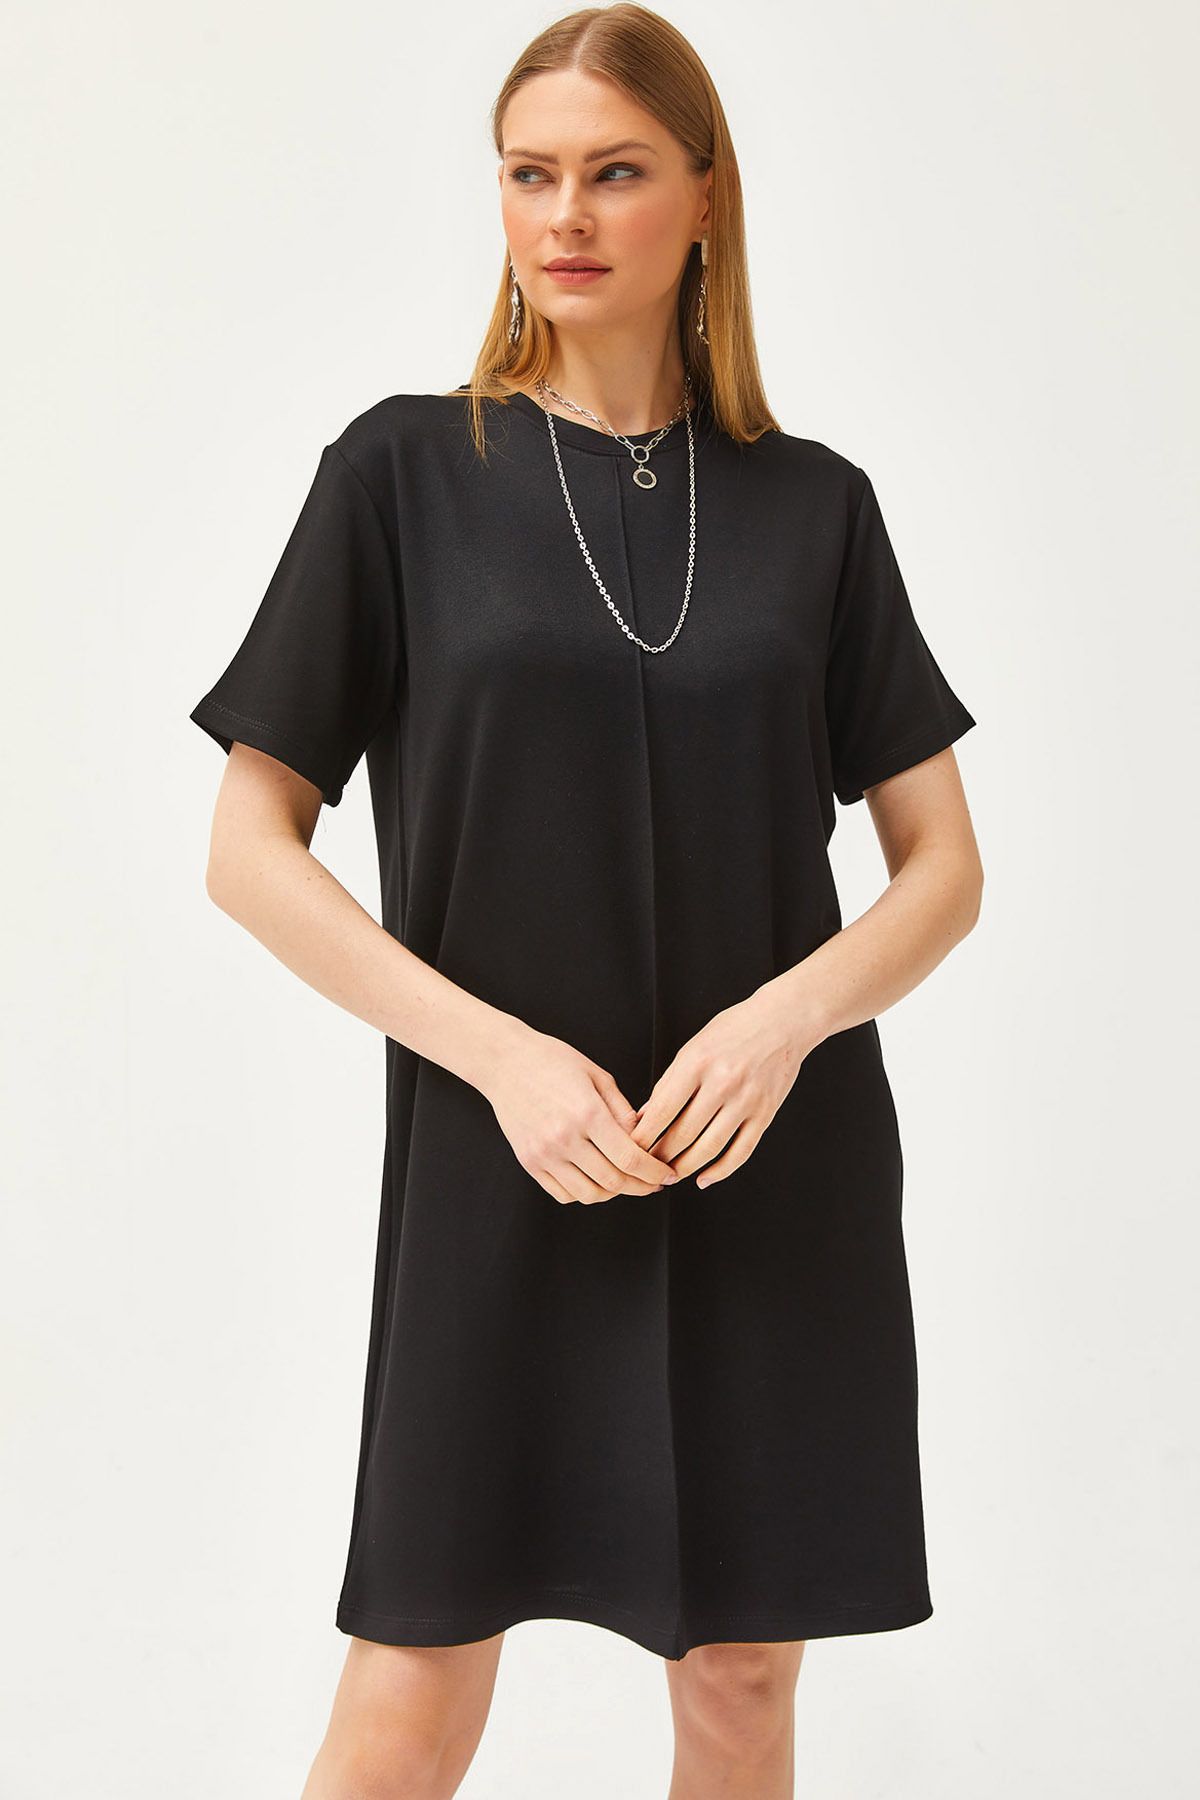 Olalook Kadın Siyah Önü Dikişli Yumuşak Dokulu Mini Elbise ELB-19002087